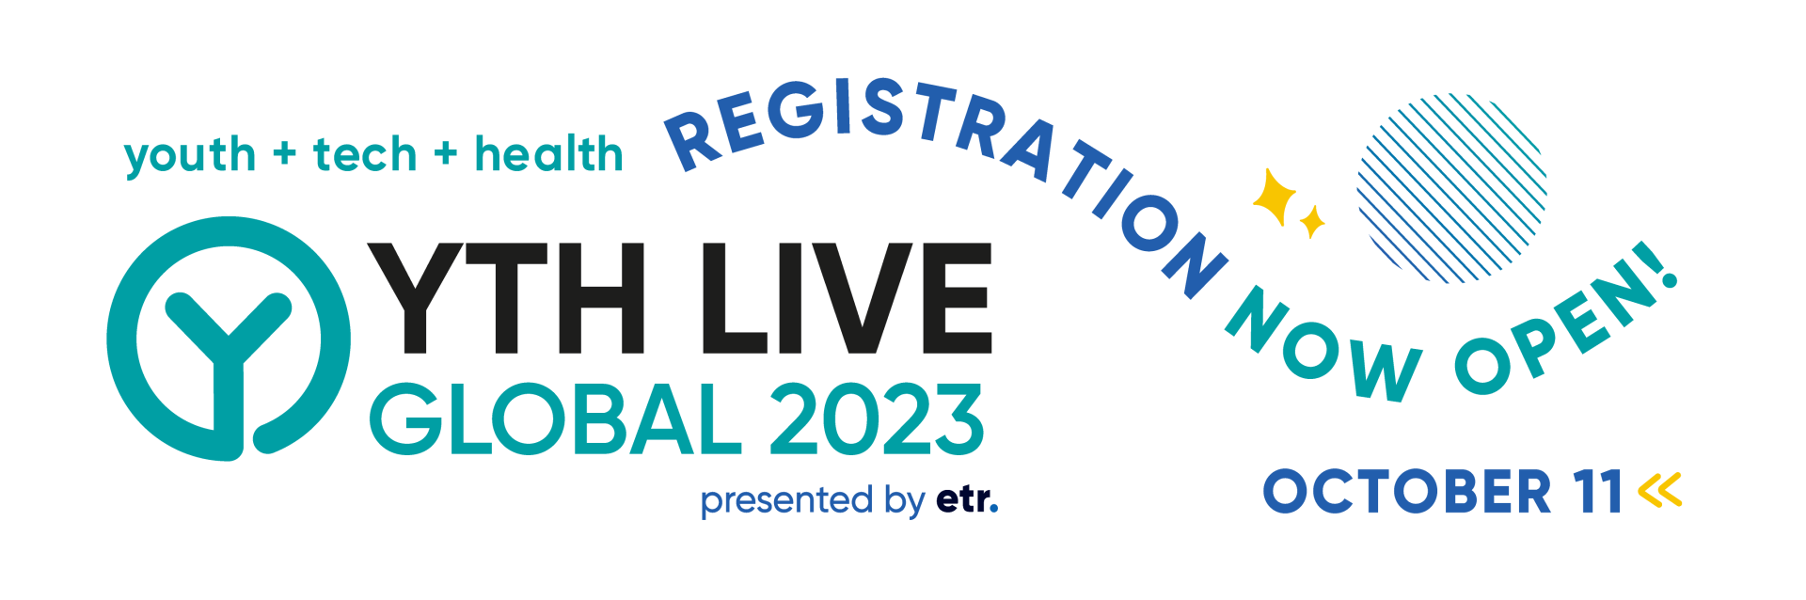 YTH Live Global 2023 banner